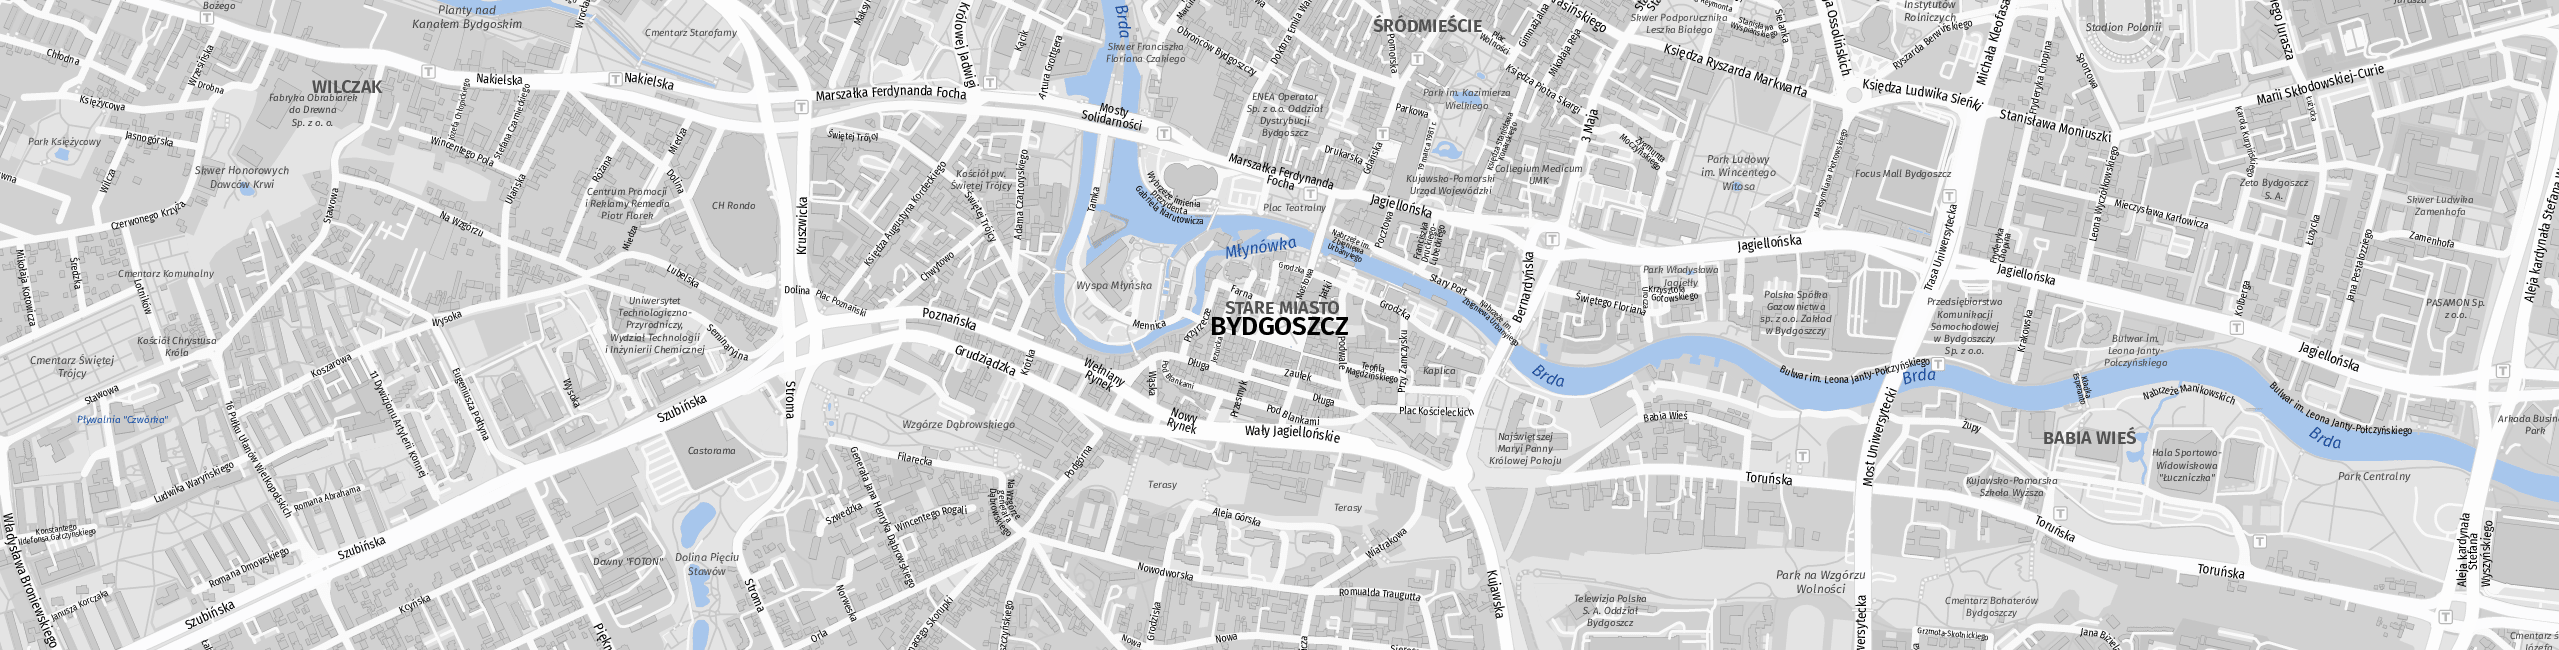 Stadtplan Bydgoszcz zum Downloaden.